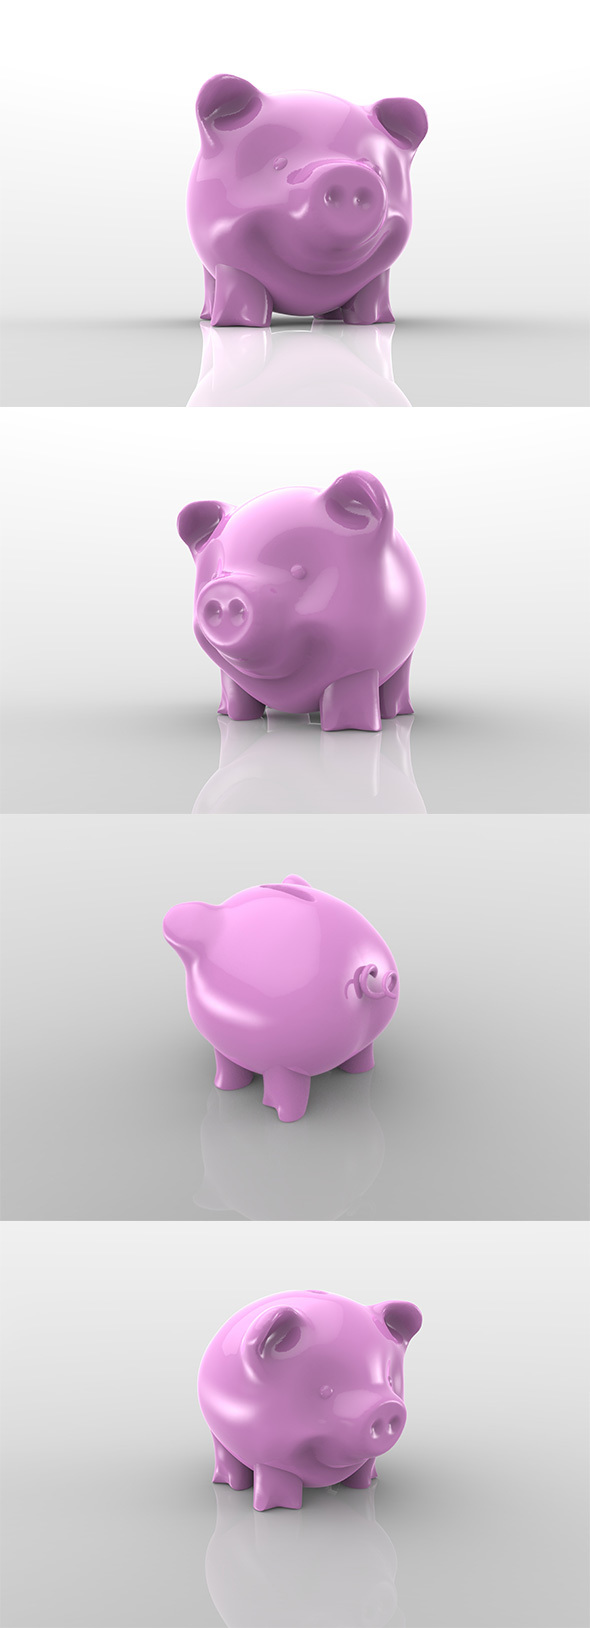 Piggy Bank - 3Docean 14030748